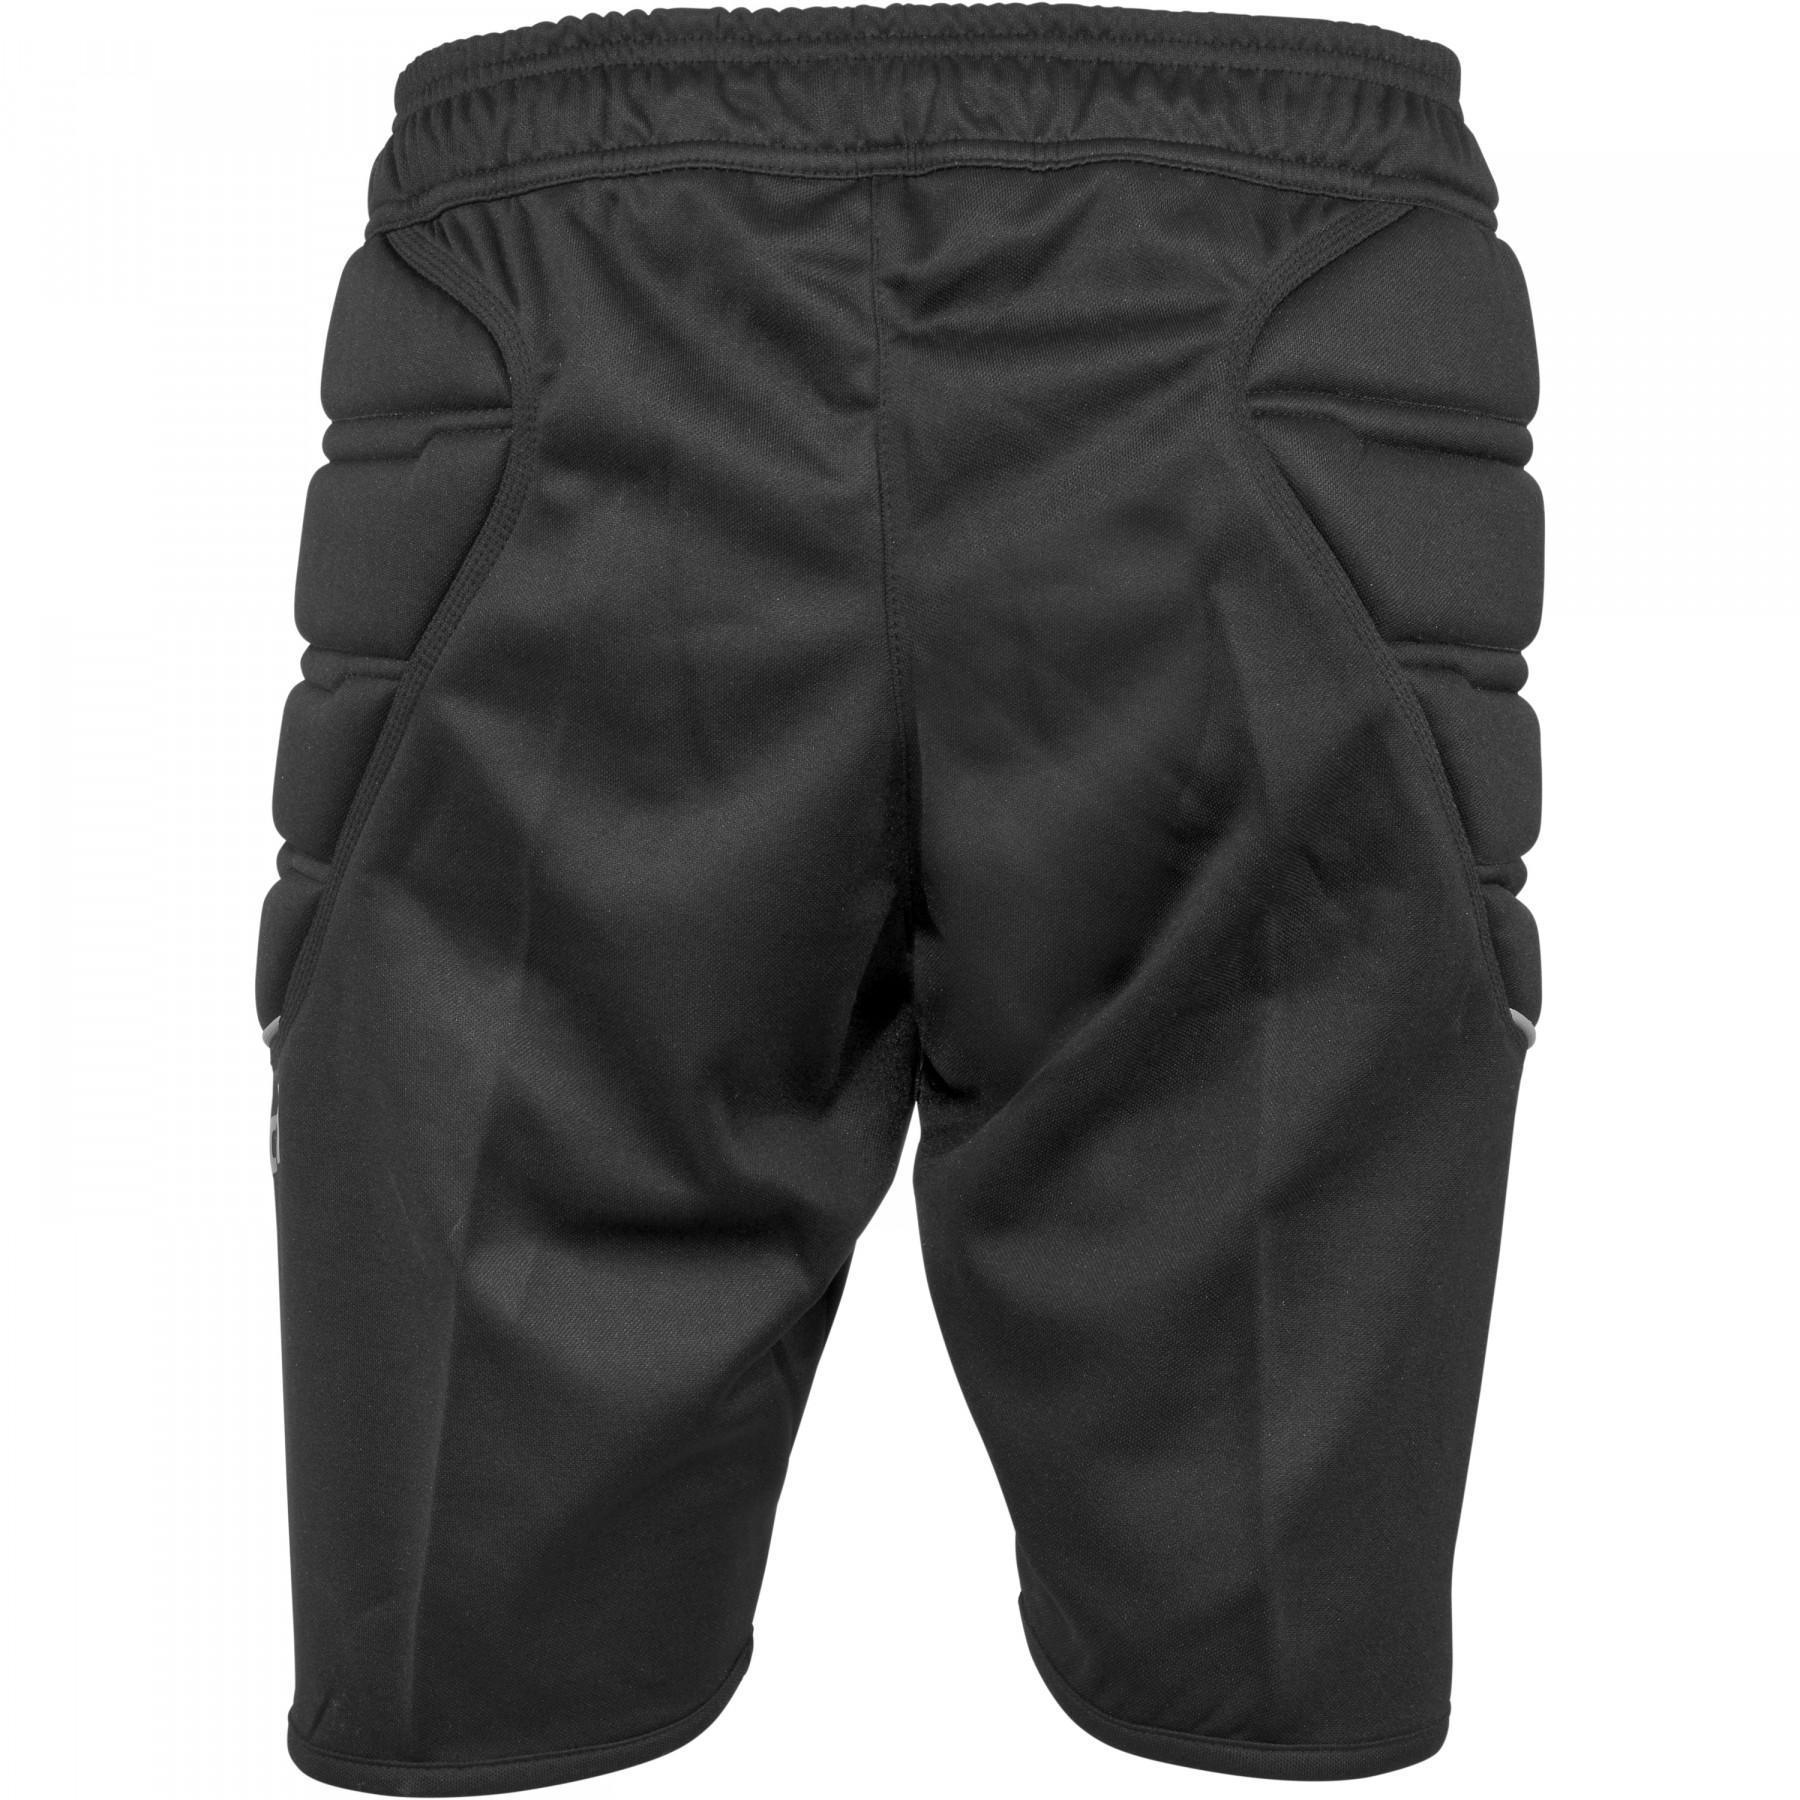 Children's shorts Reusch Compact 